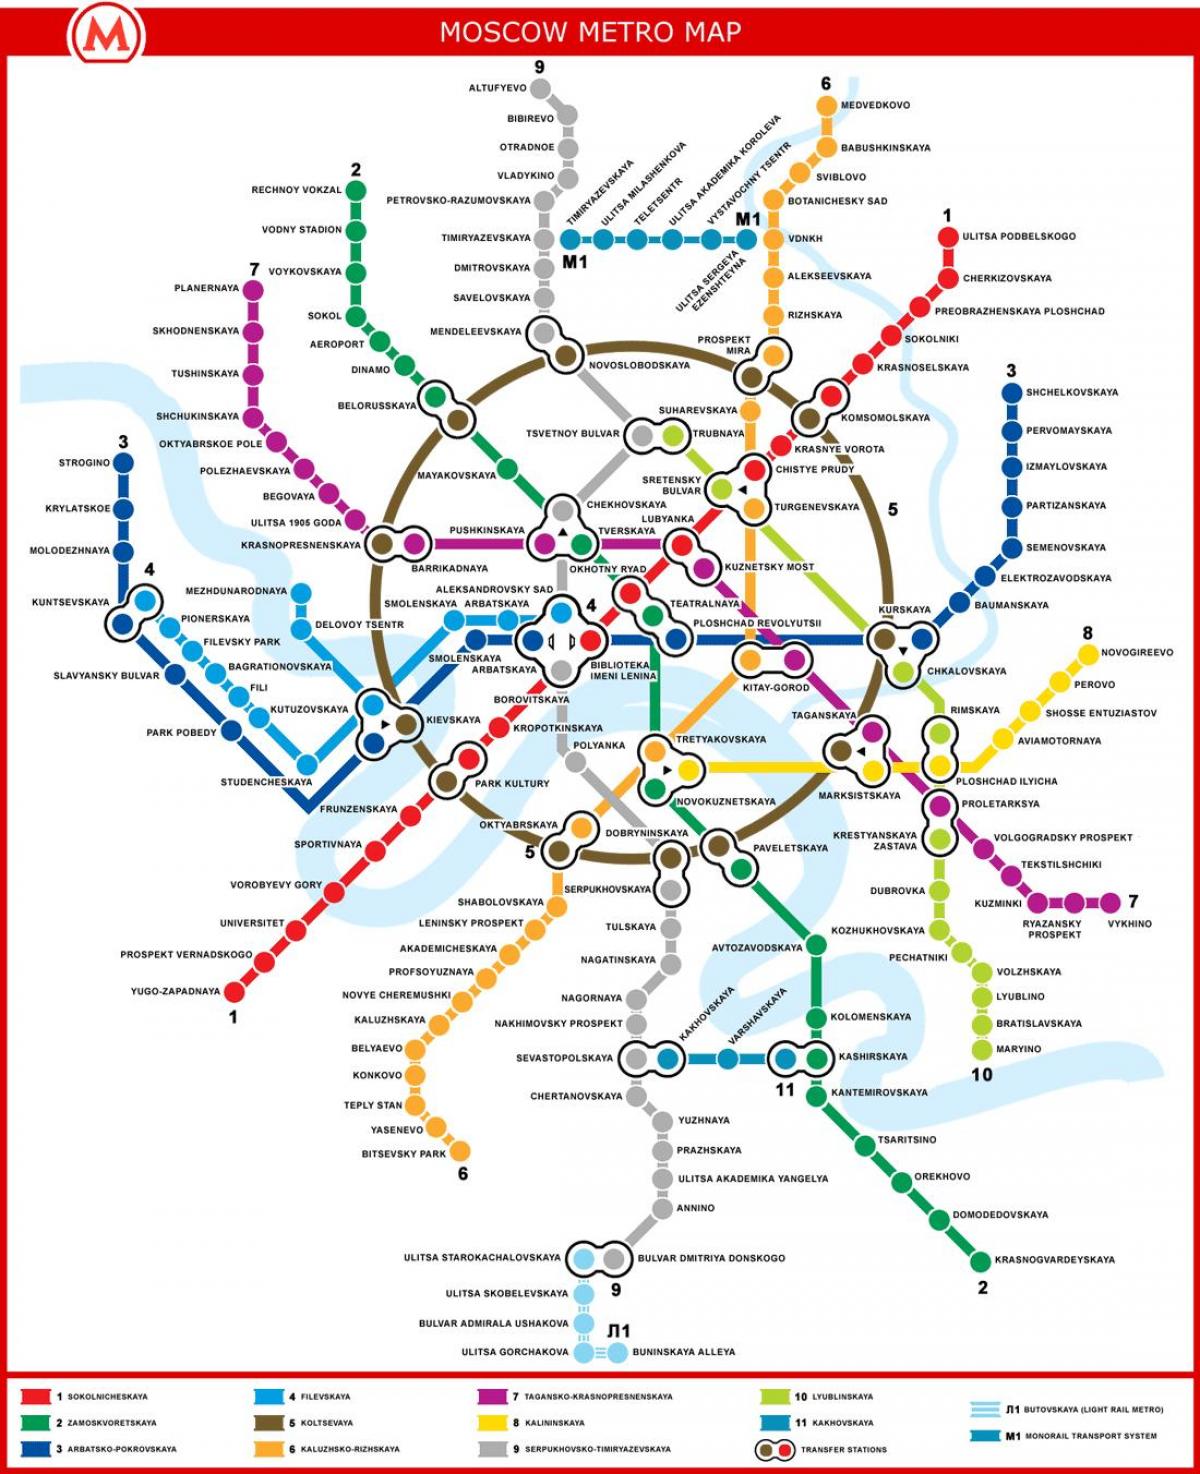 Moscow metro mapa